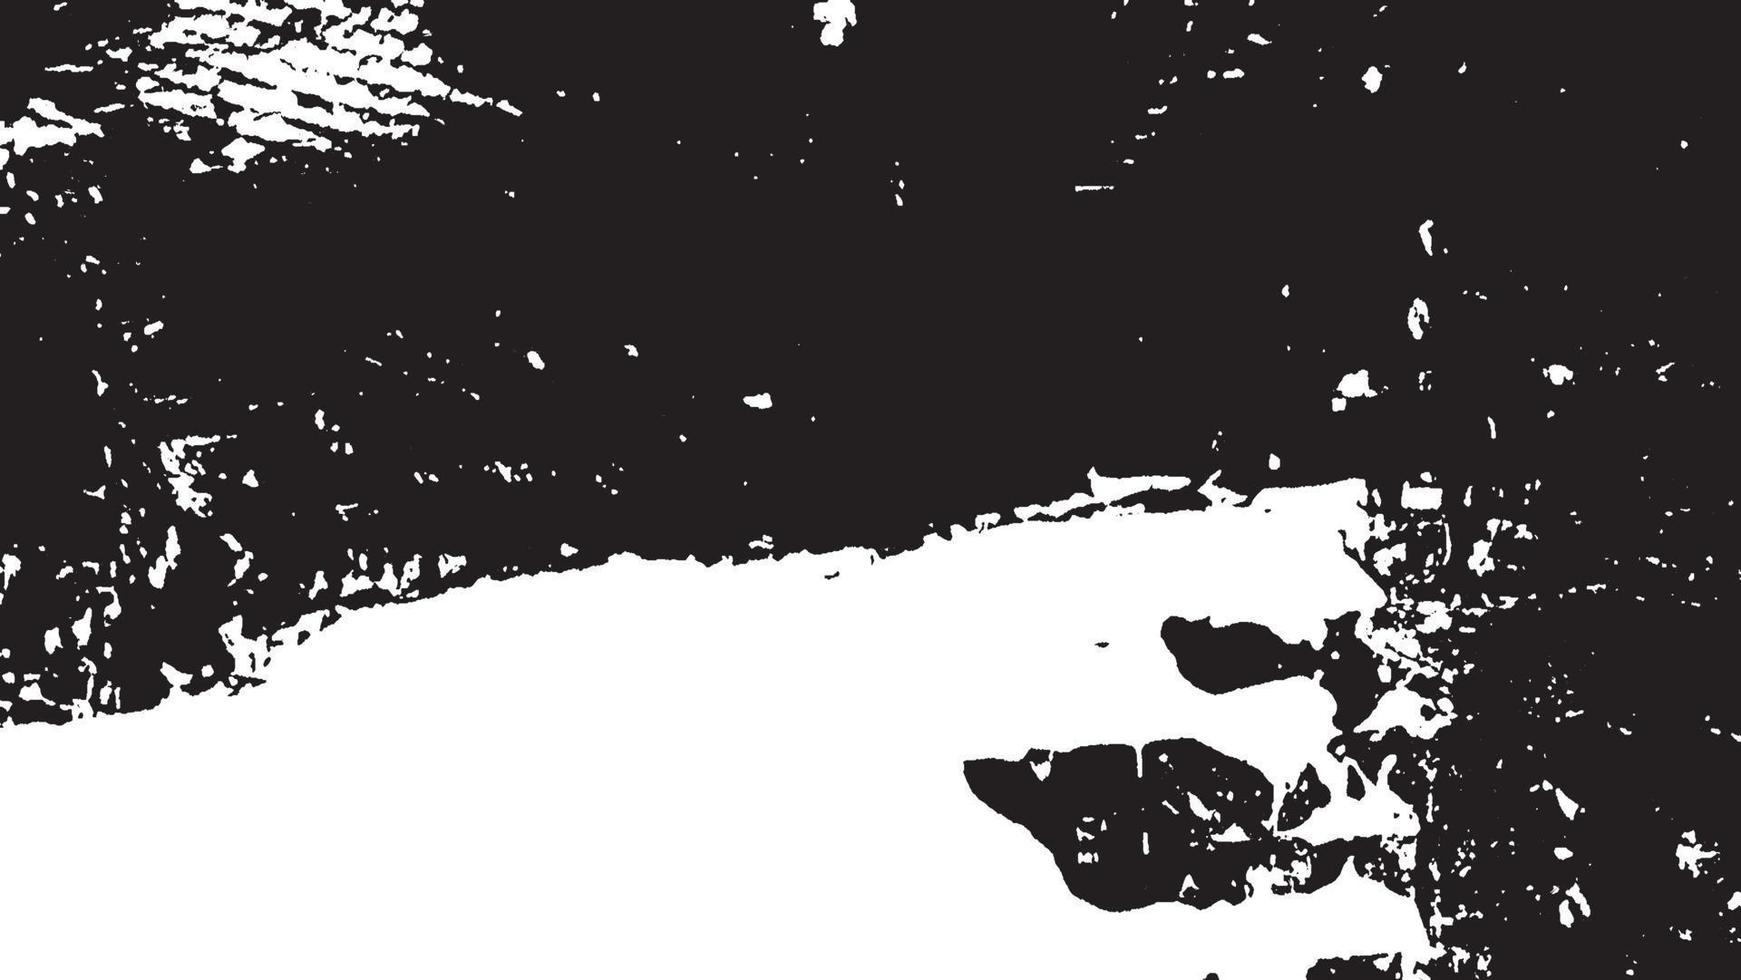 texture de superposition en détresse, arrière-plan grunge noir blanc abstrait, saleté en détresse vectorielle, texture de copeaux, fissures, rayures, éraflures, poussière, saleté. vecteur